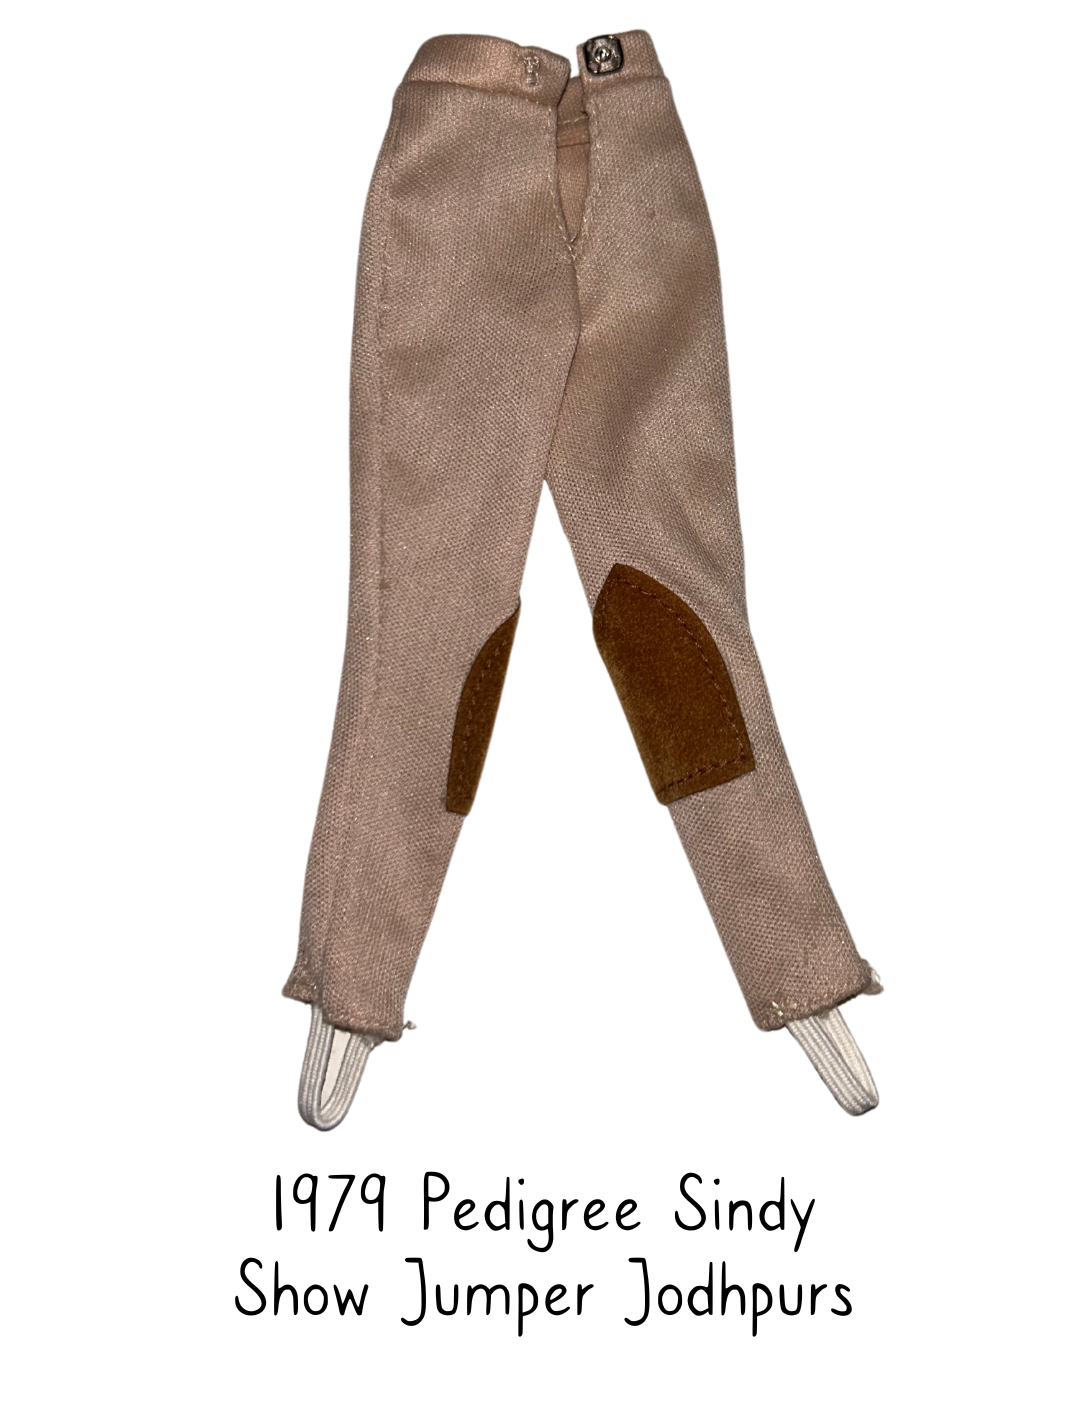 1979 Pedigree Sindy Fashion Doll Show Jumper Jodhpurs